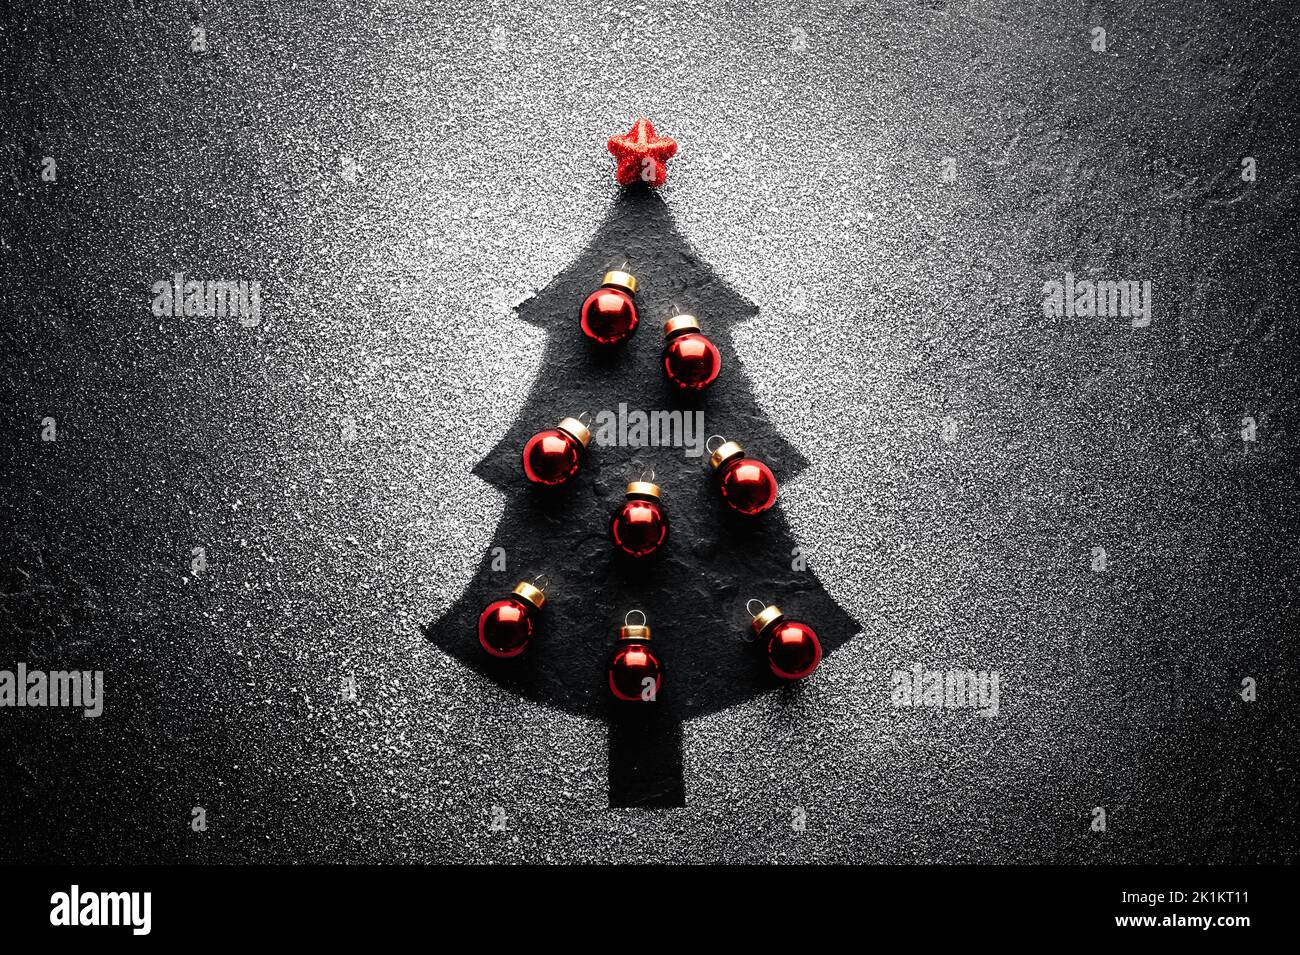 Dekorierter Weihnachtsbaum mit roten weihnachtskugeln und Stern auf der Oberseite aus Kunstschnee auf schwarzem Hintergrund erstellt. Konzept für Winterferien Stockfoto